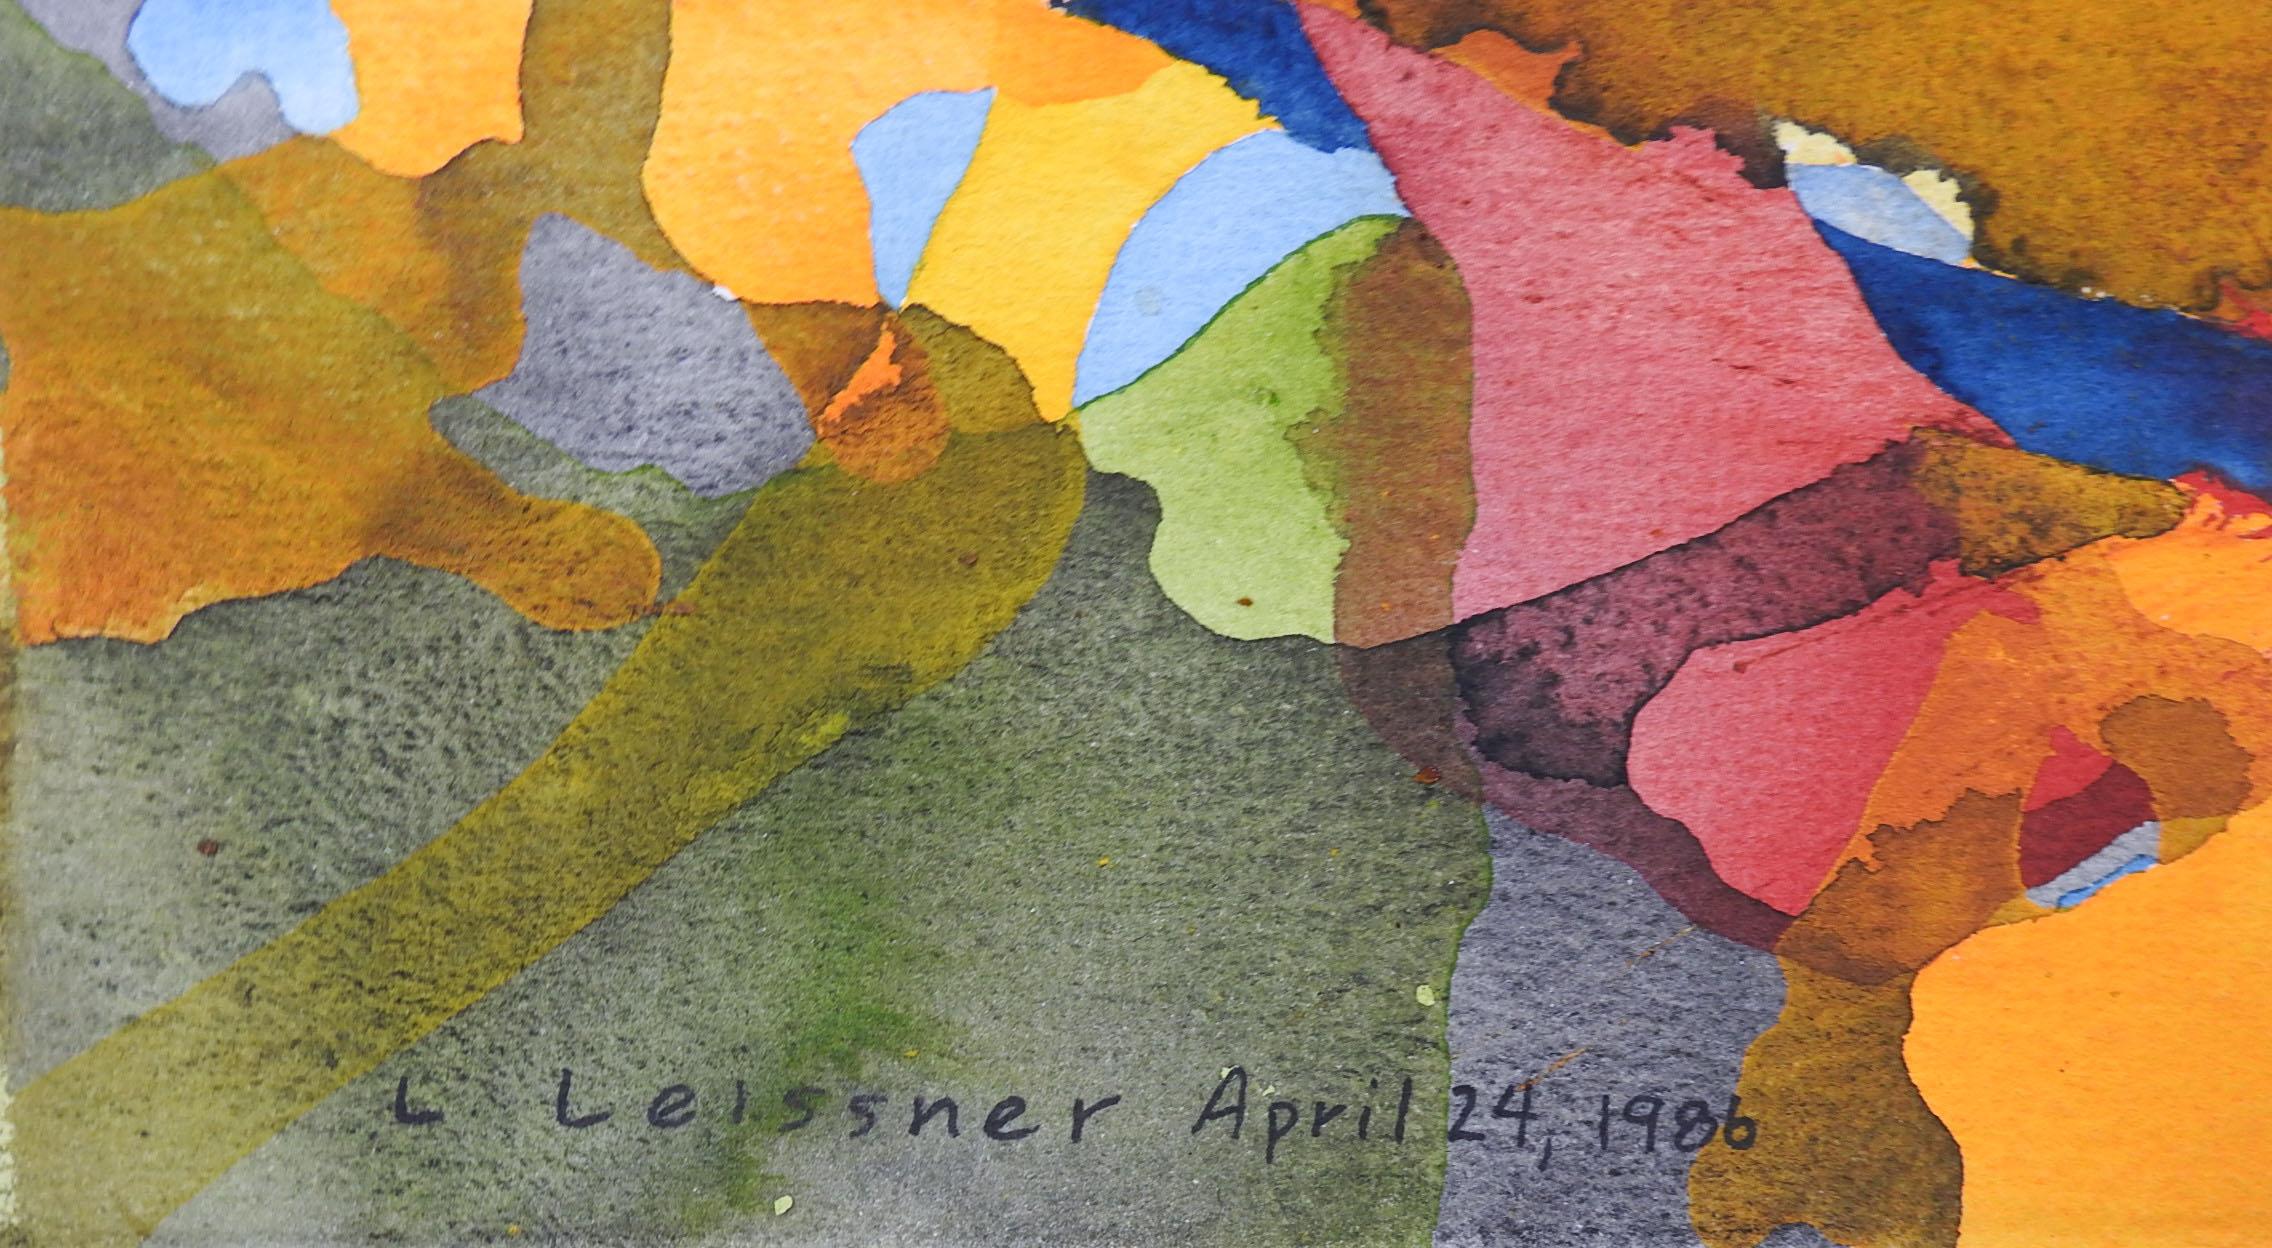 Vintage 1986 abstraktes Aquarell auf schwerem Papier von Lawrence Leissner (20. Jahrhundert) Texas.  Unten in der Mitte signiert, betitelt Allegorie über Pfifferlinge, verso signiert und datiert.  Ungerahmt.